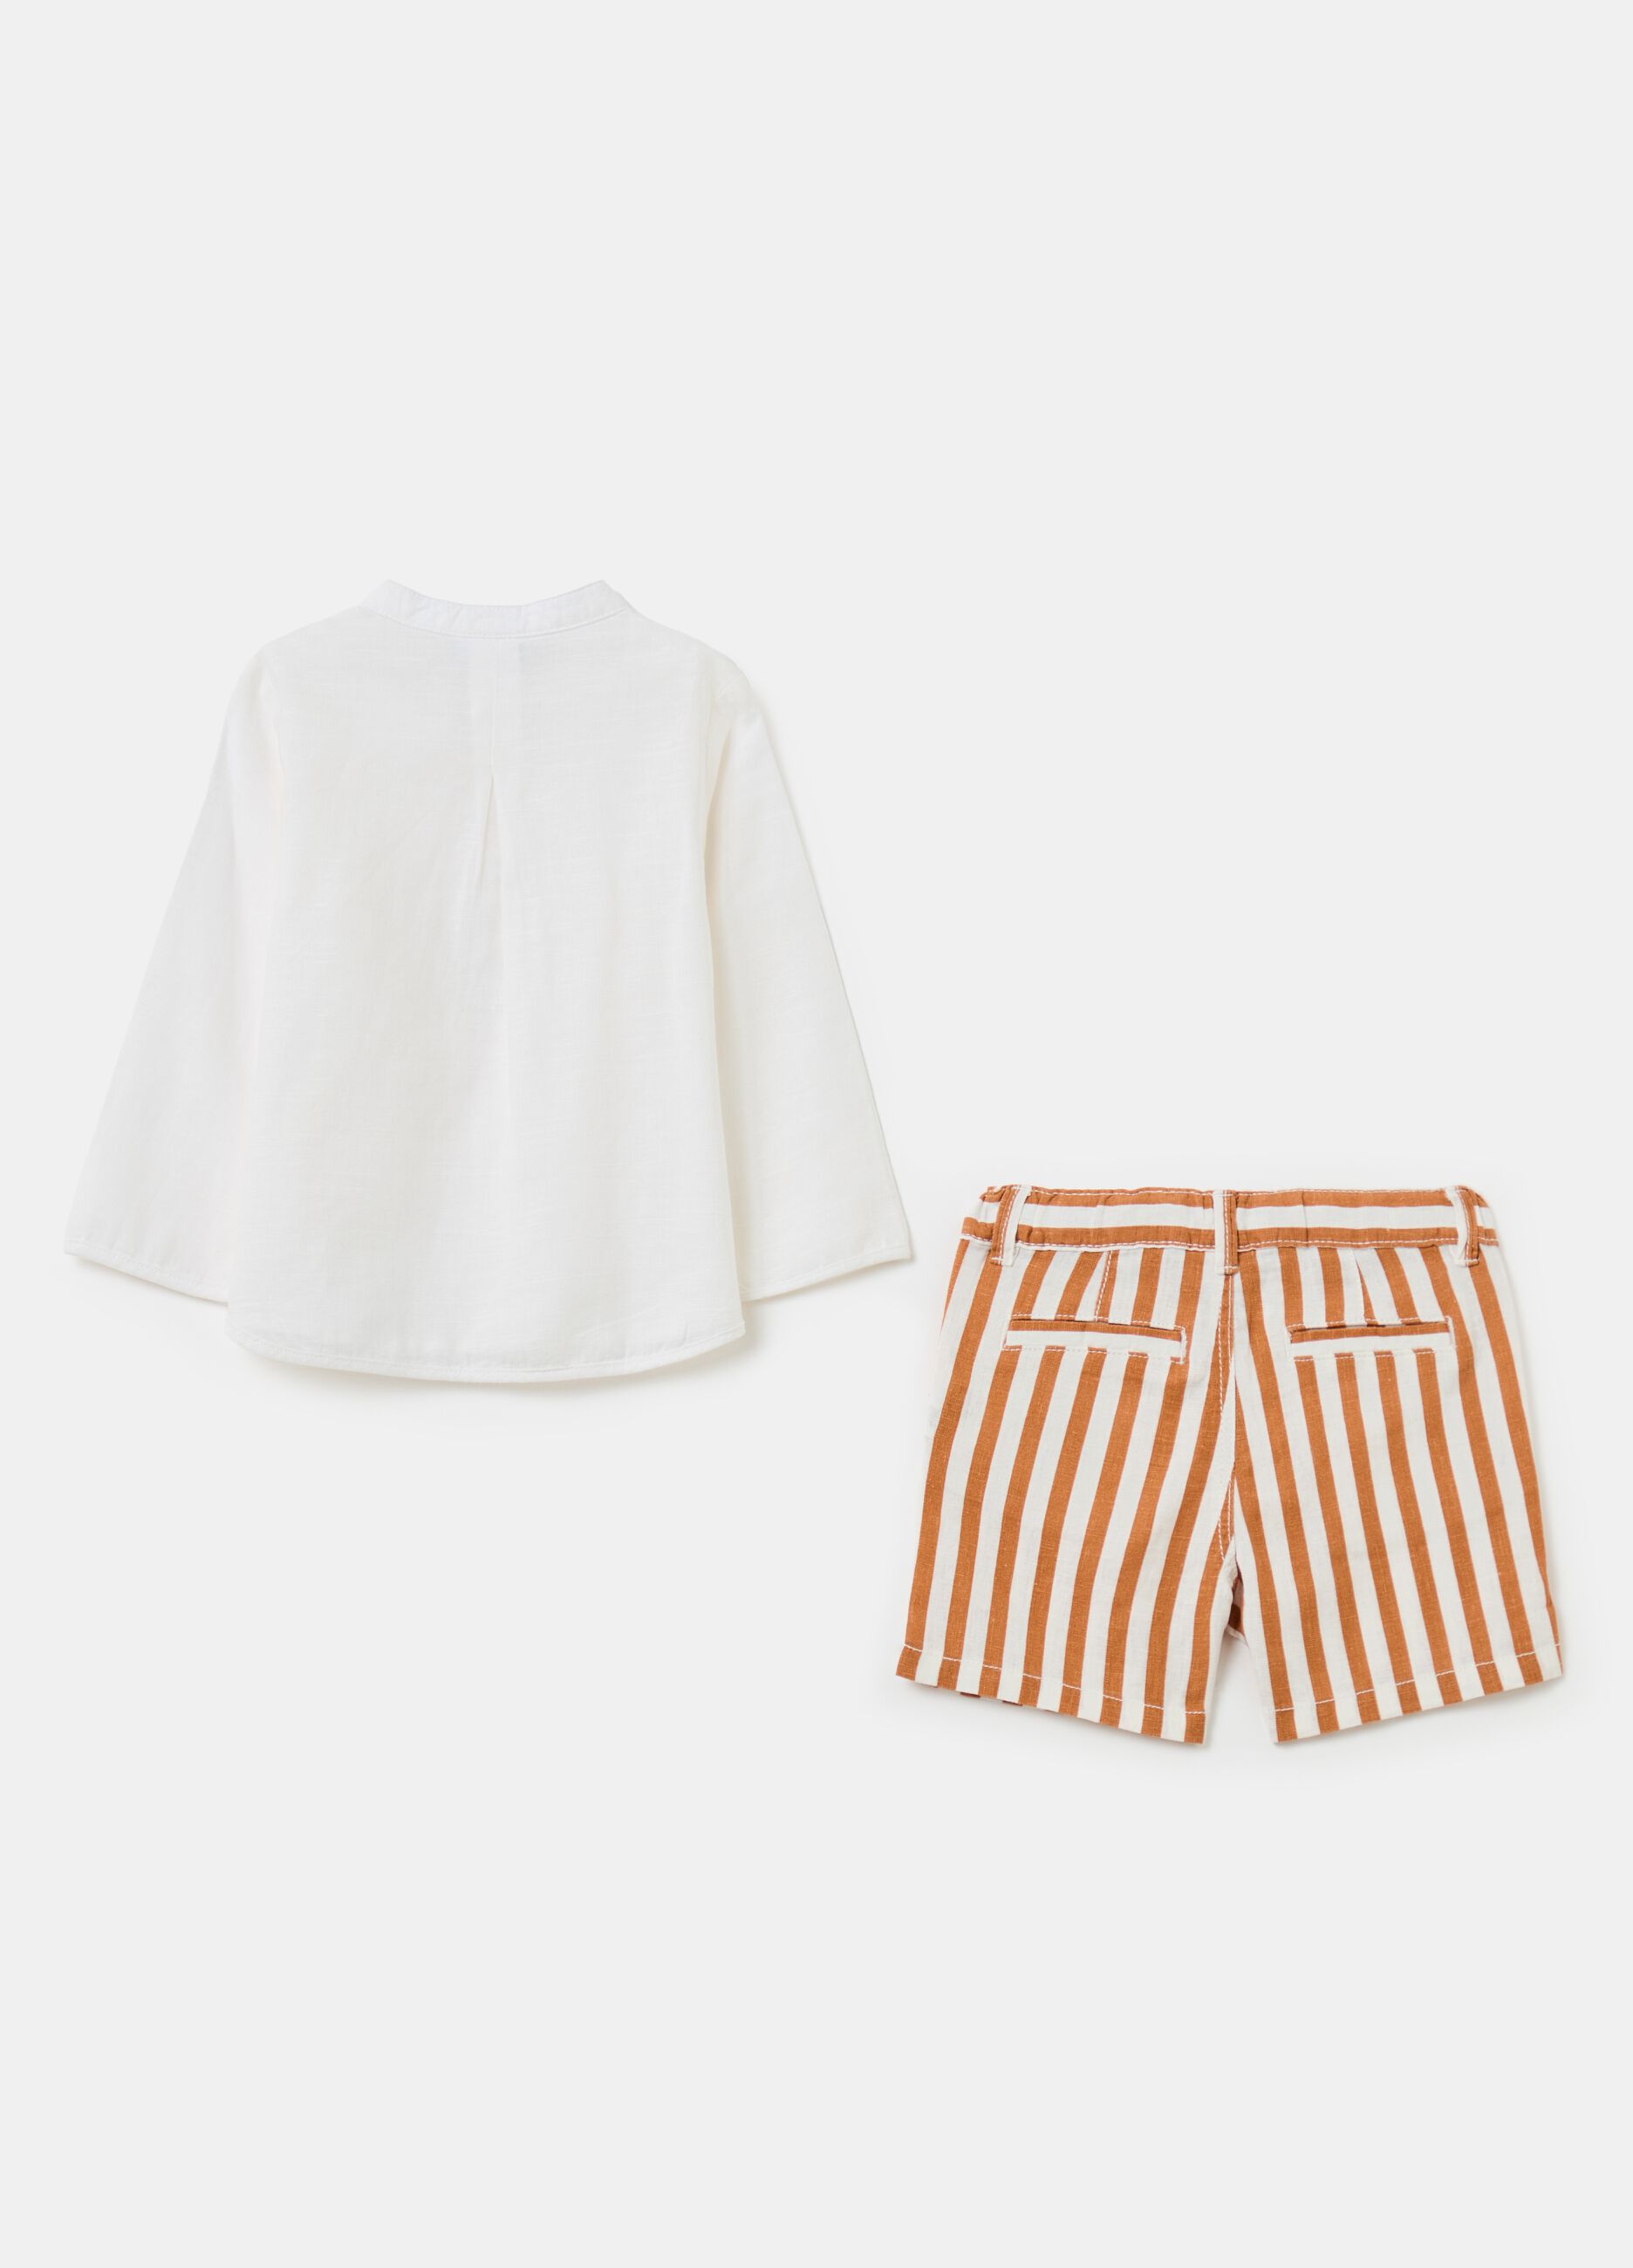 Striped Bermuda shorts and shirt set